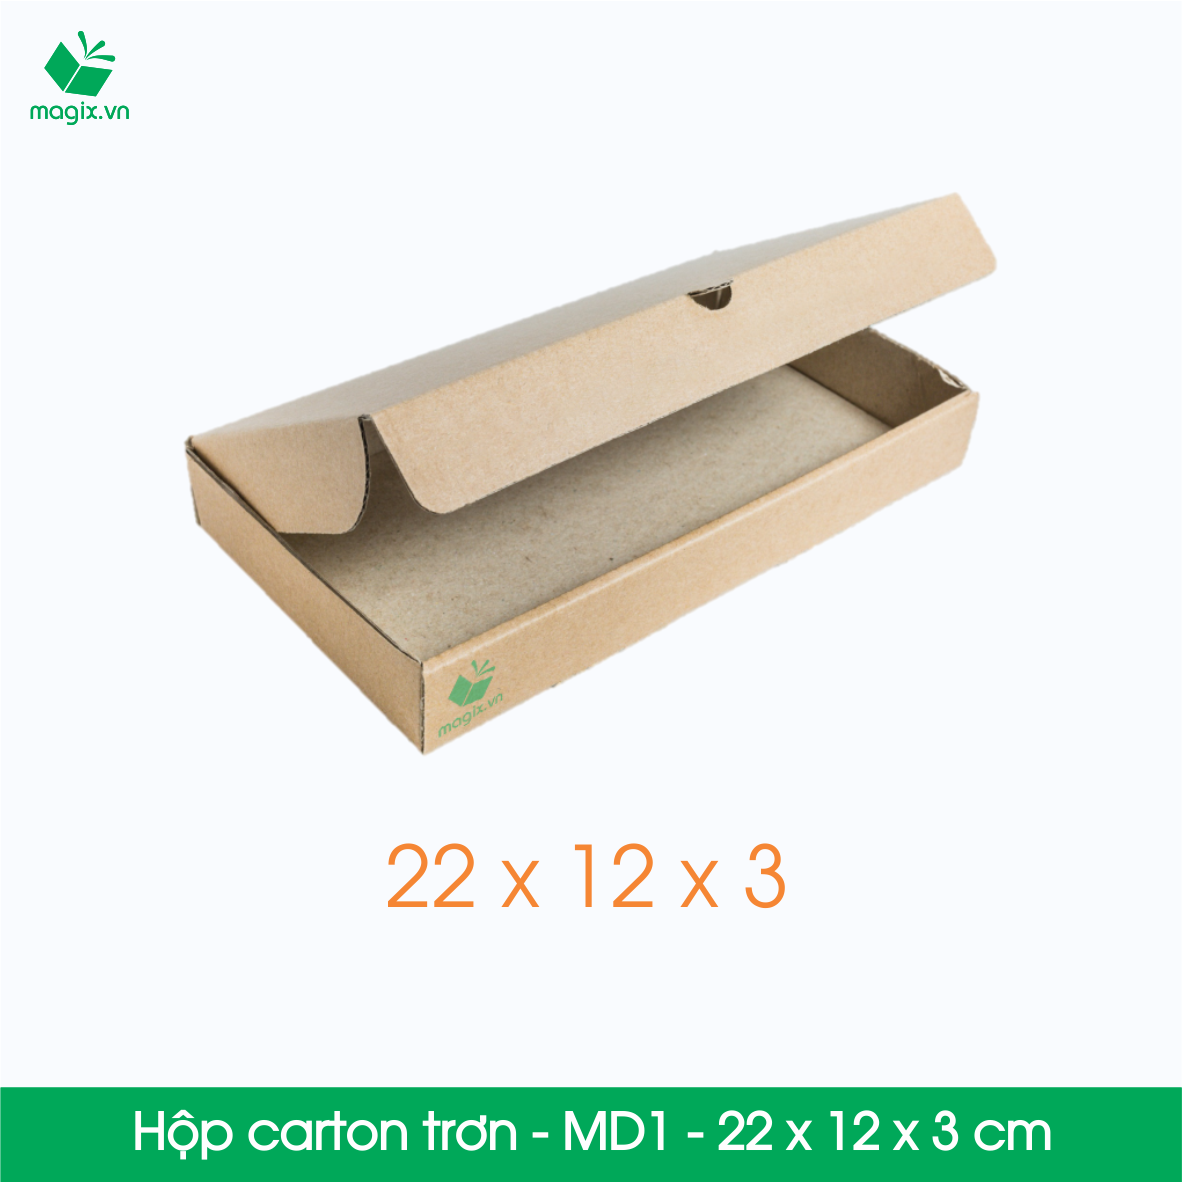 MD1 - 22x12x3 cm - 100 Thùng hộp carton trơn đóng hàng